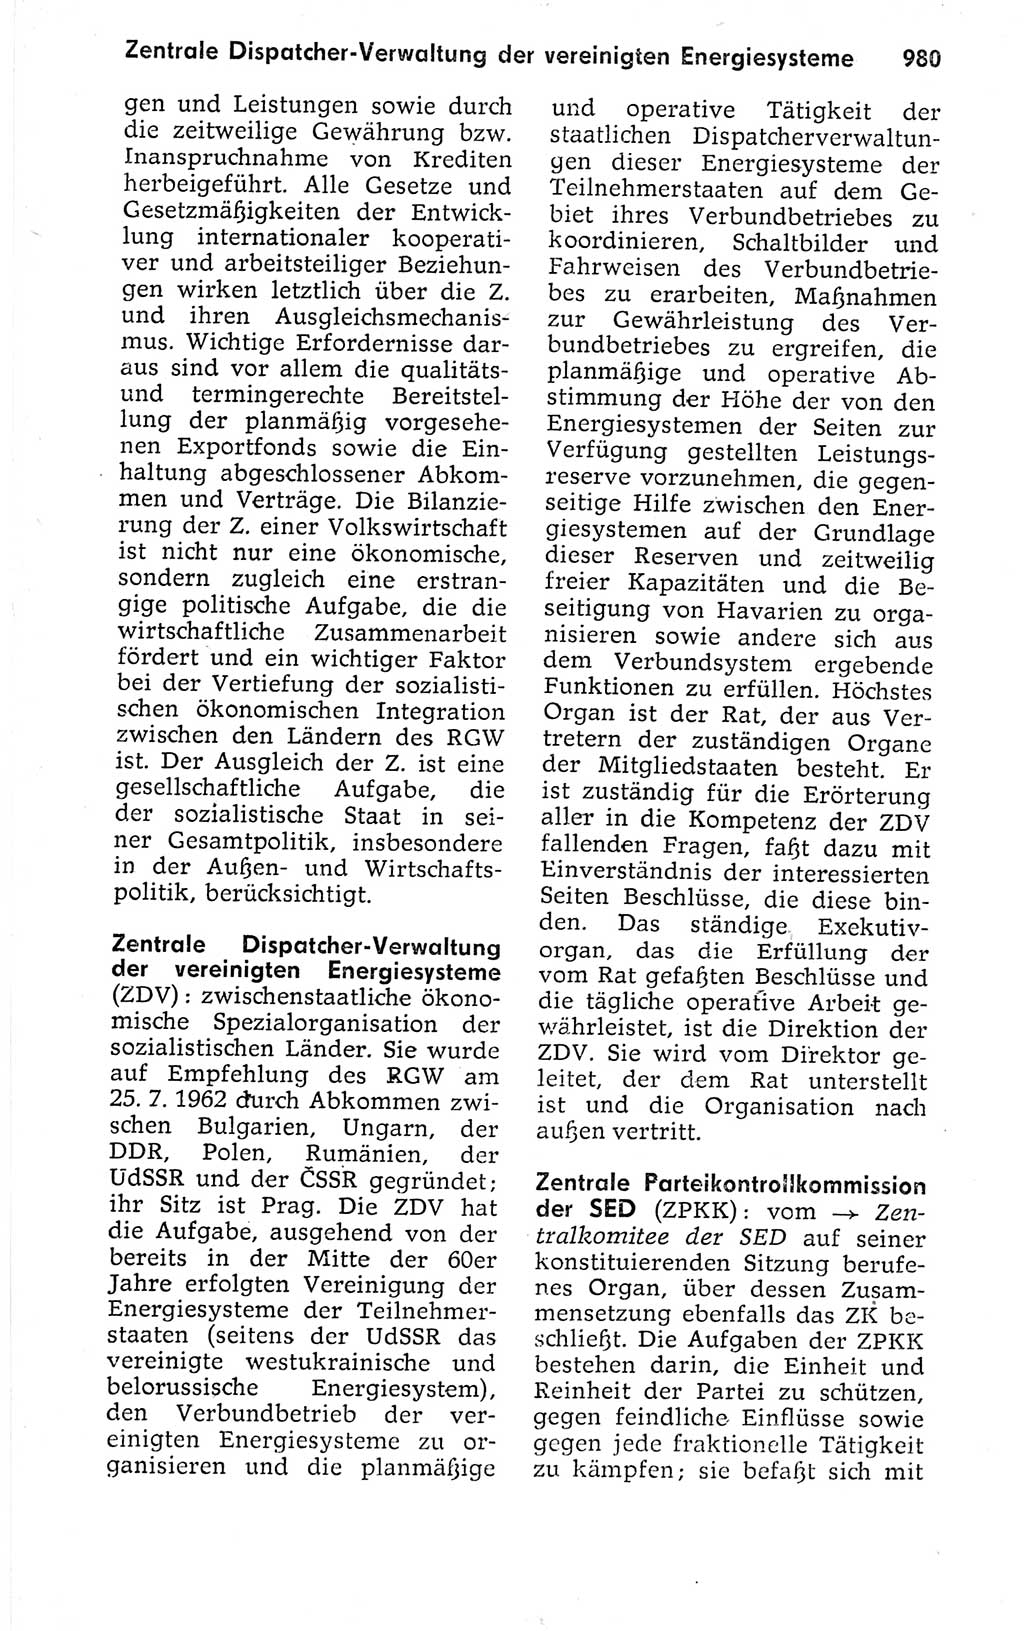 Kleines politisches Wörterbuch [Deutsche Demokratische Republik (DDR)] 1973, Seite 980 (Kl. pol. Wb. DDR 1973, S. 980)